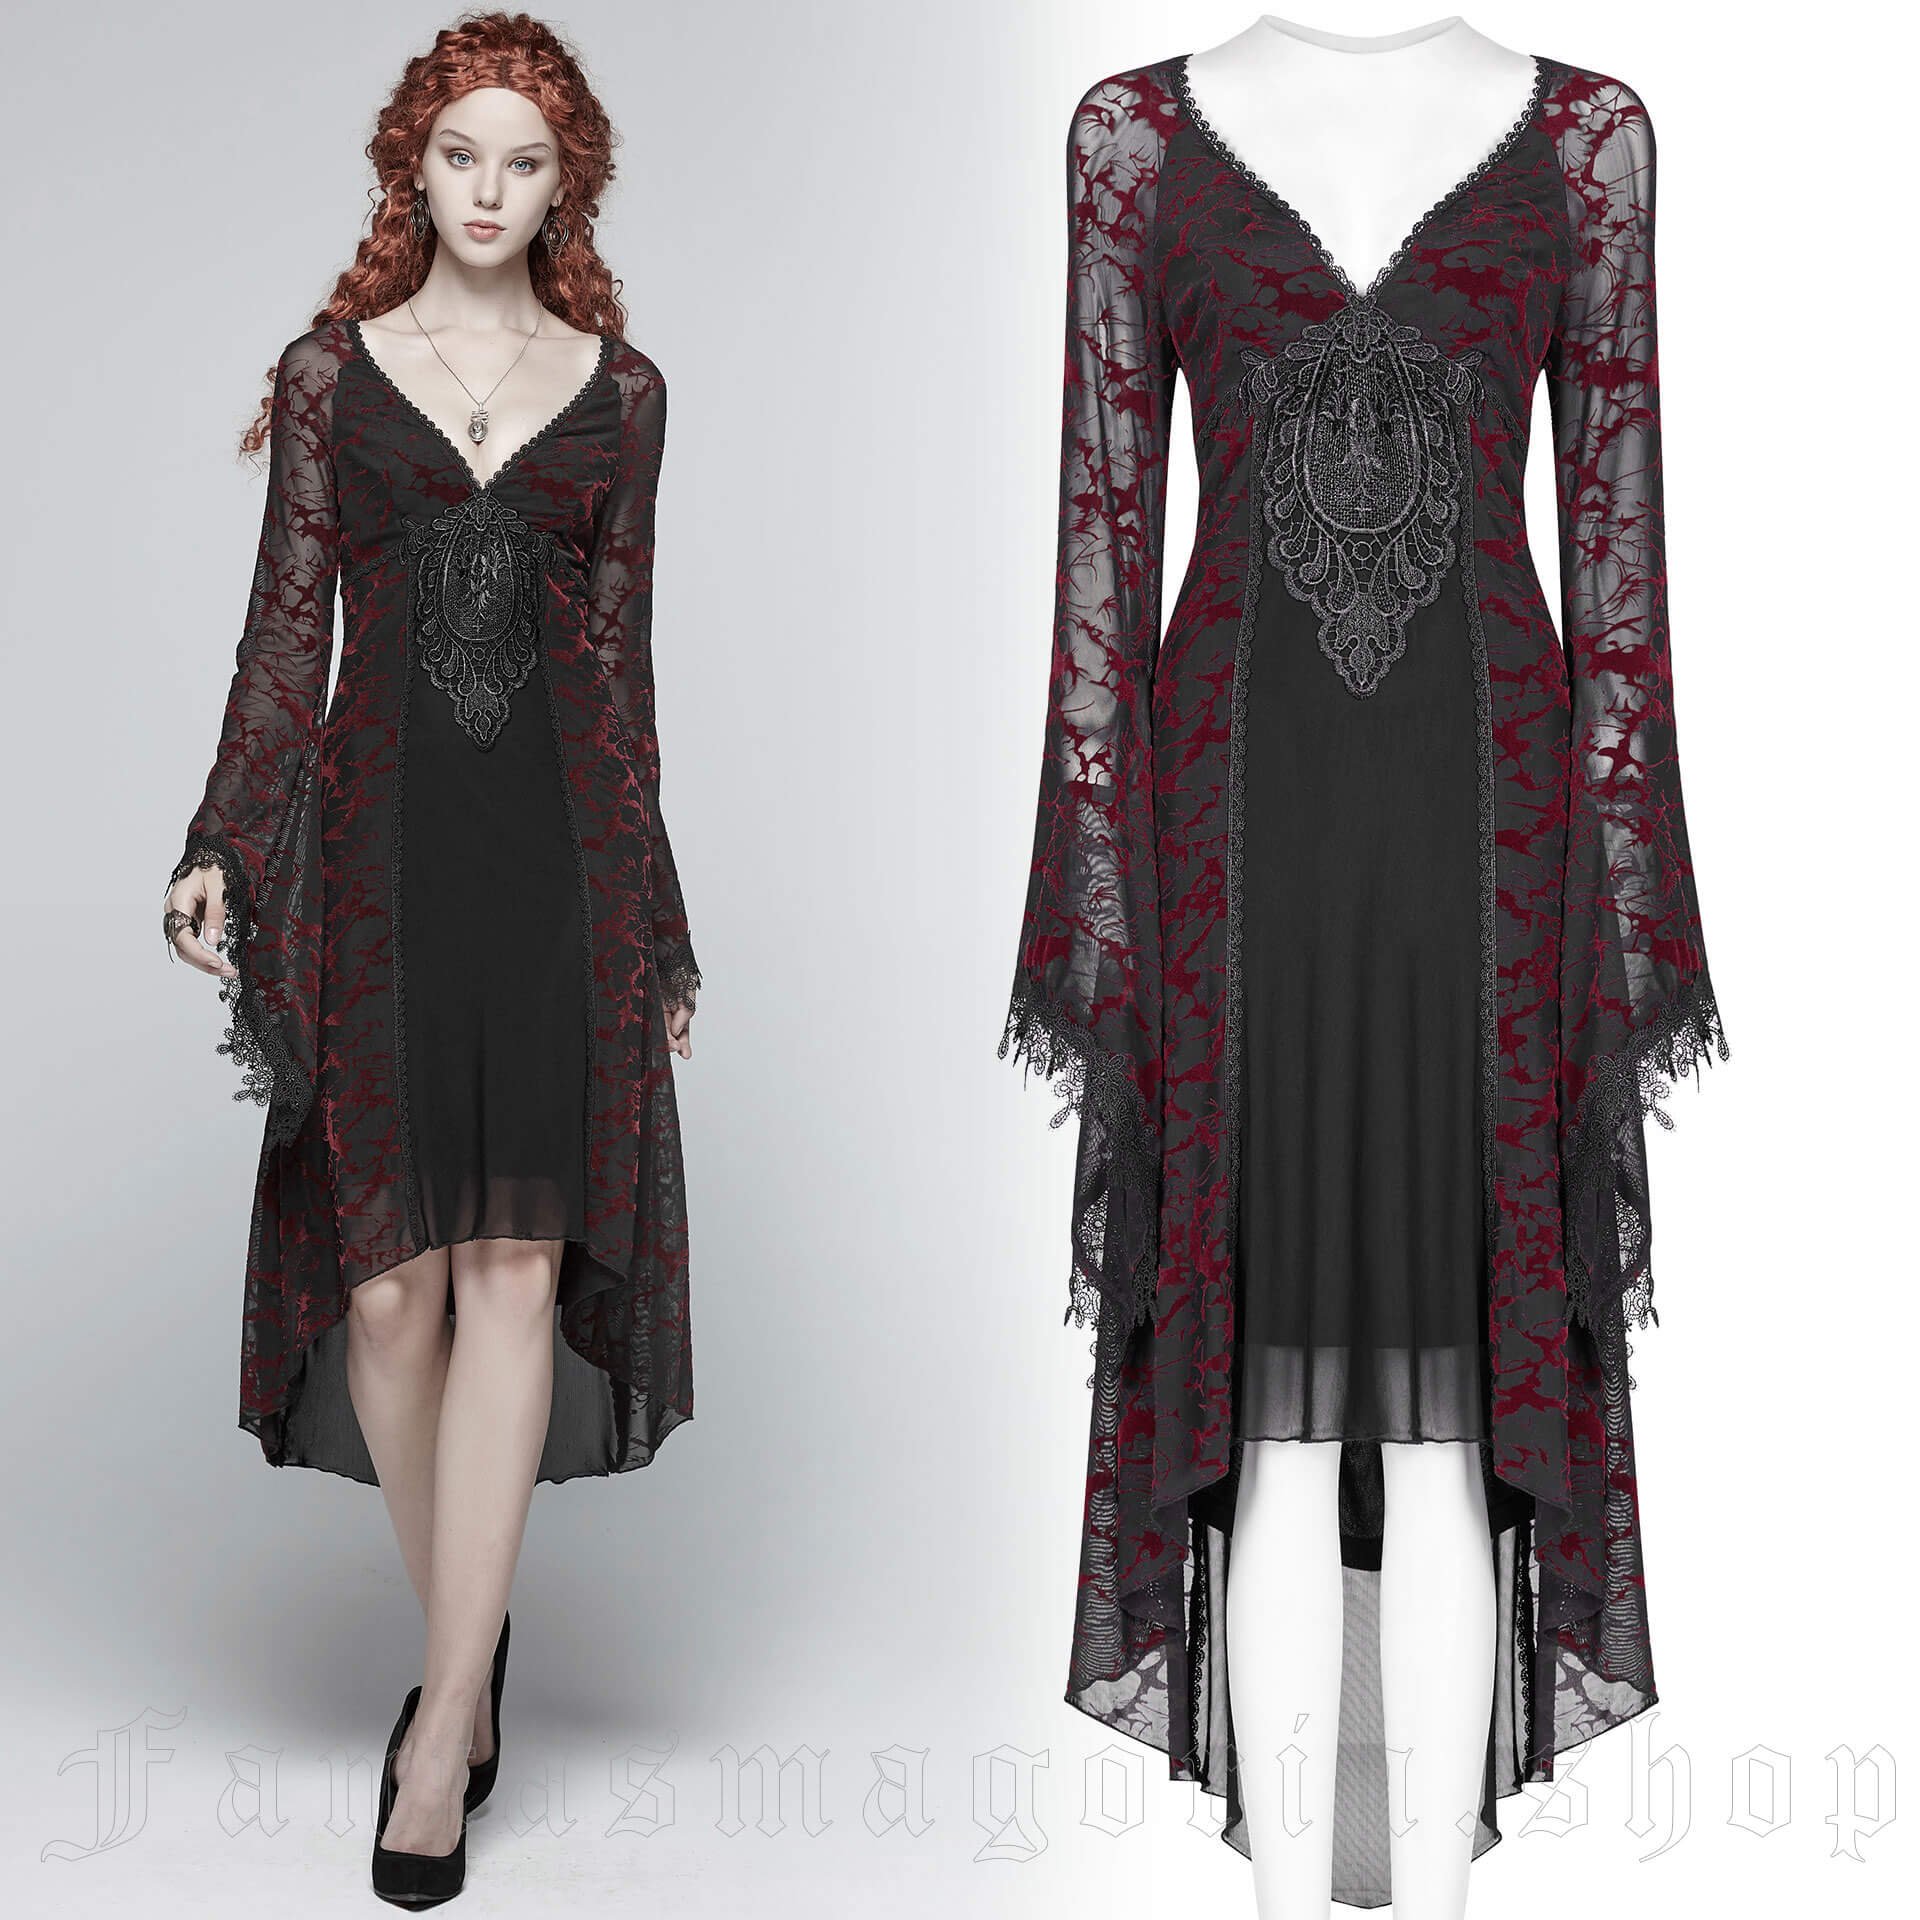 victorian gothic dress patterns